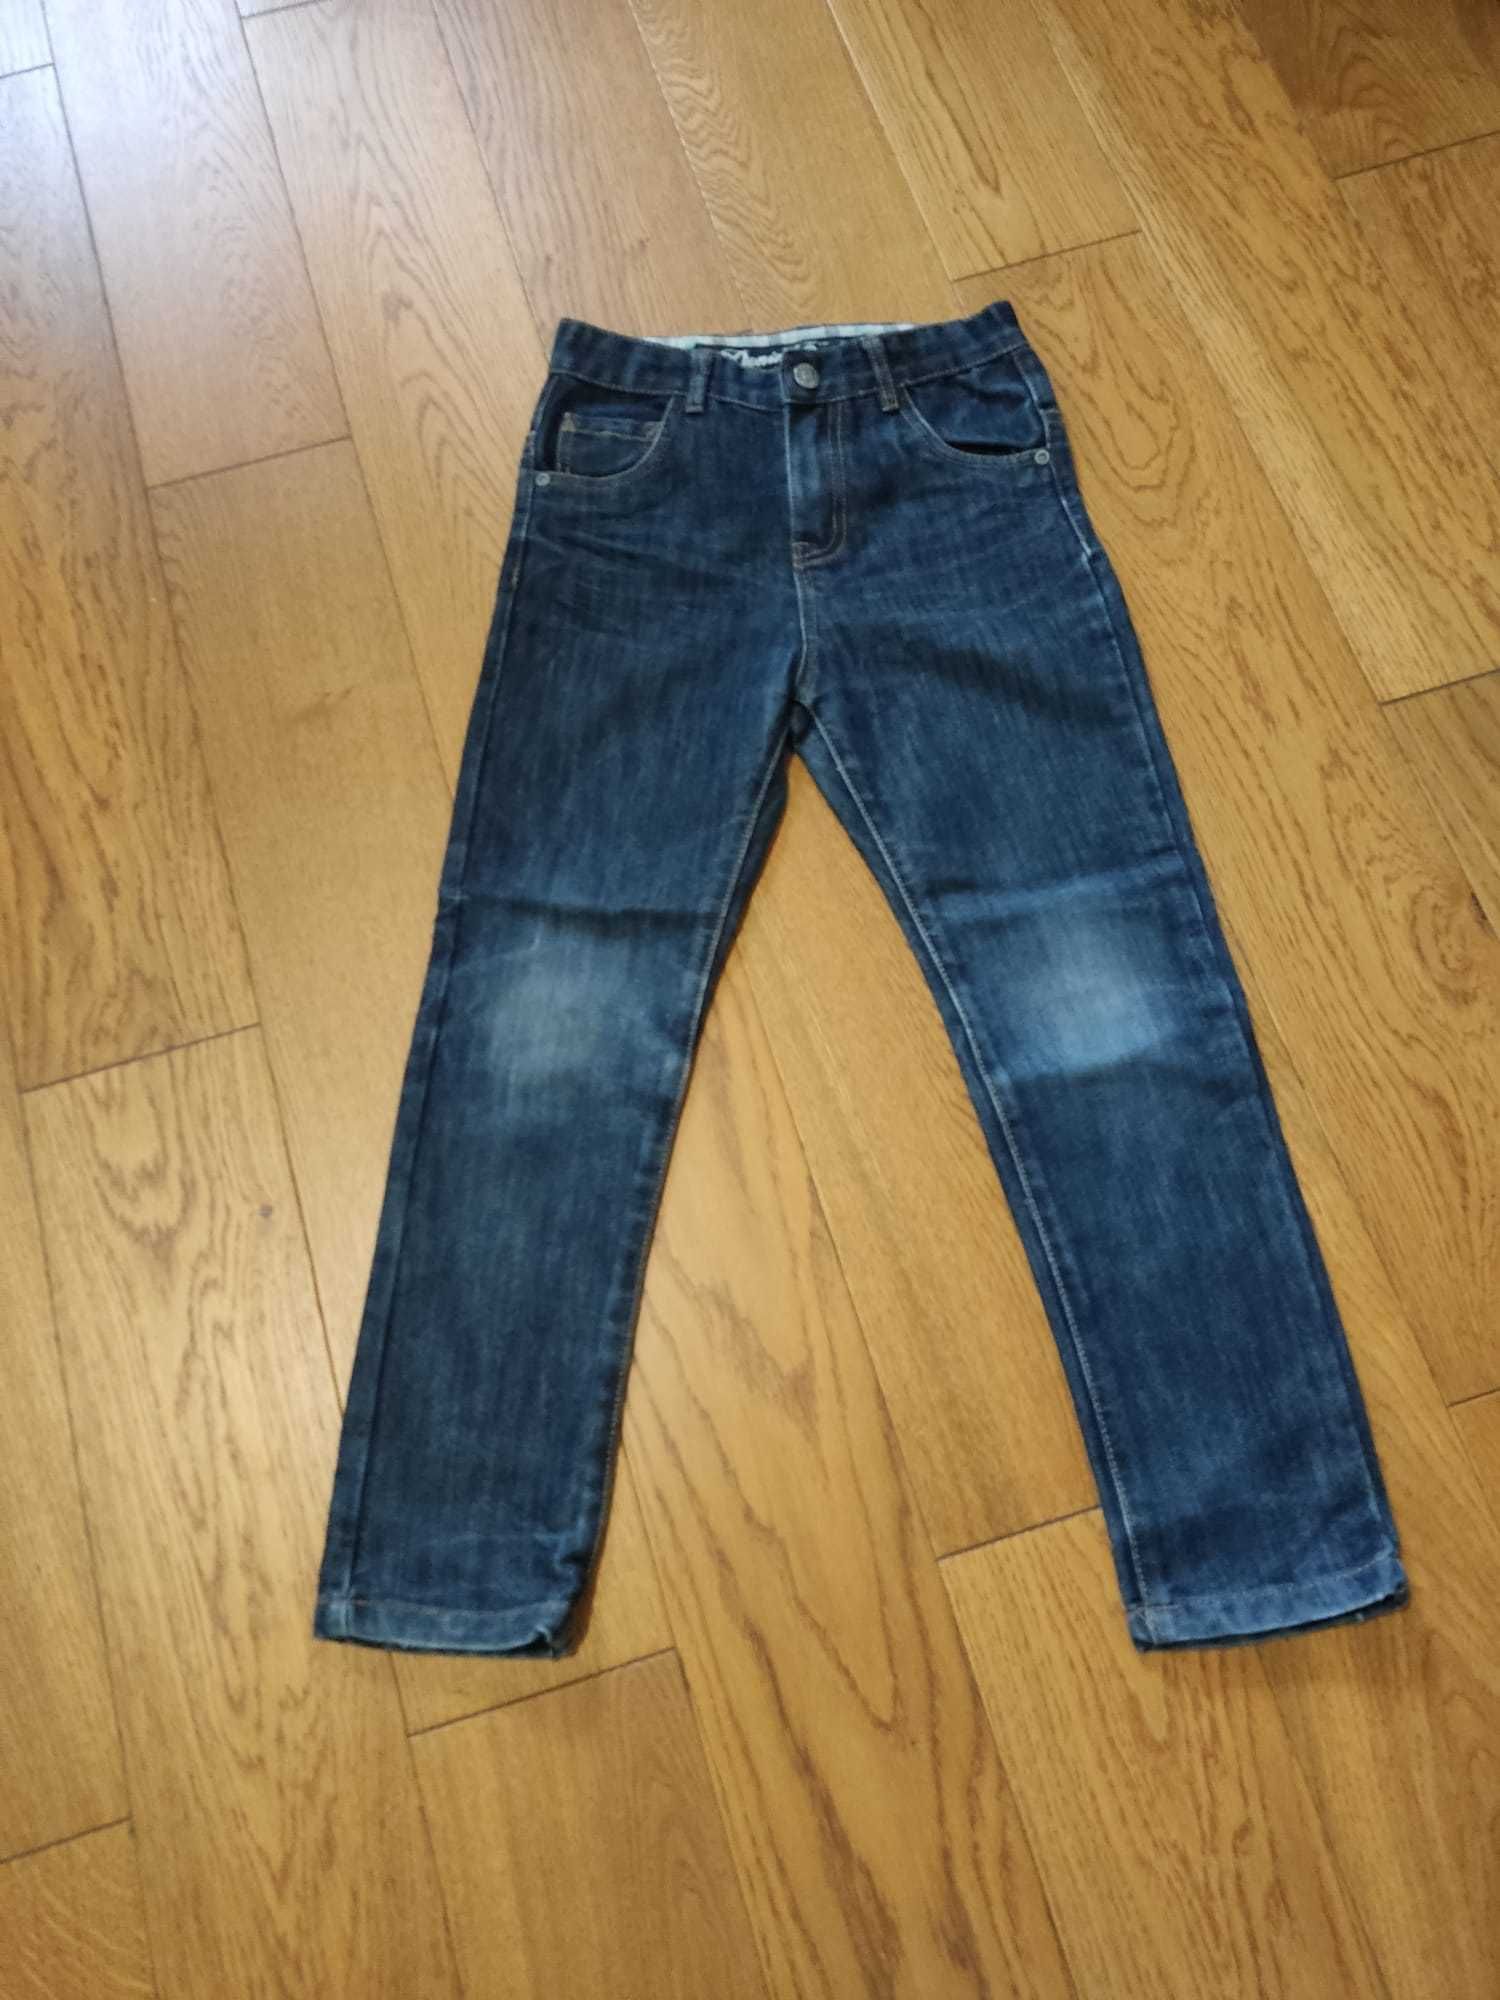 Spodnie jeansy chłopięce 122